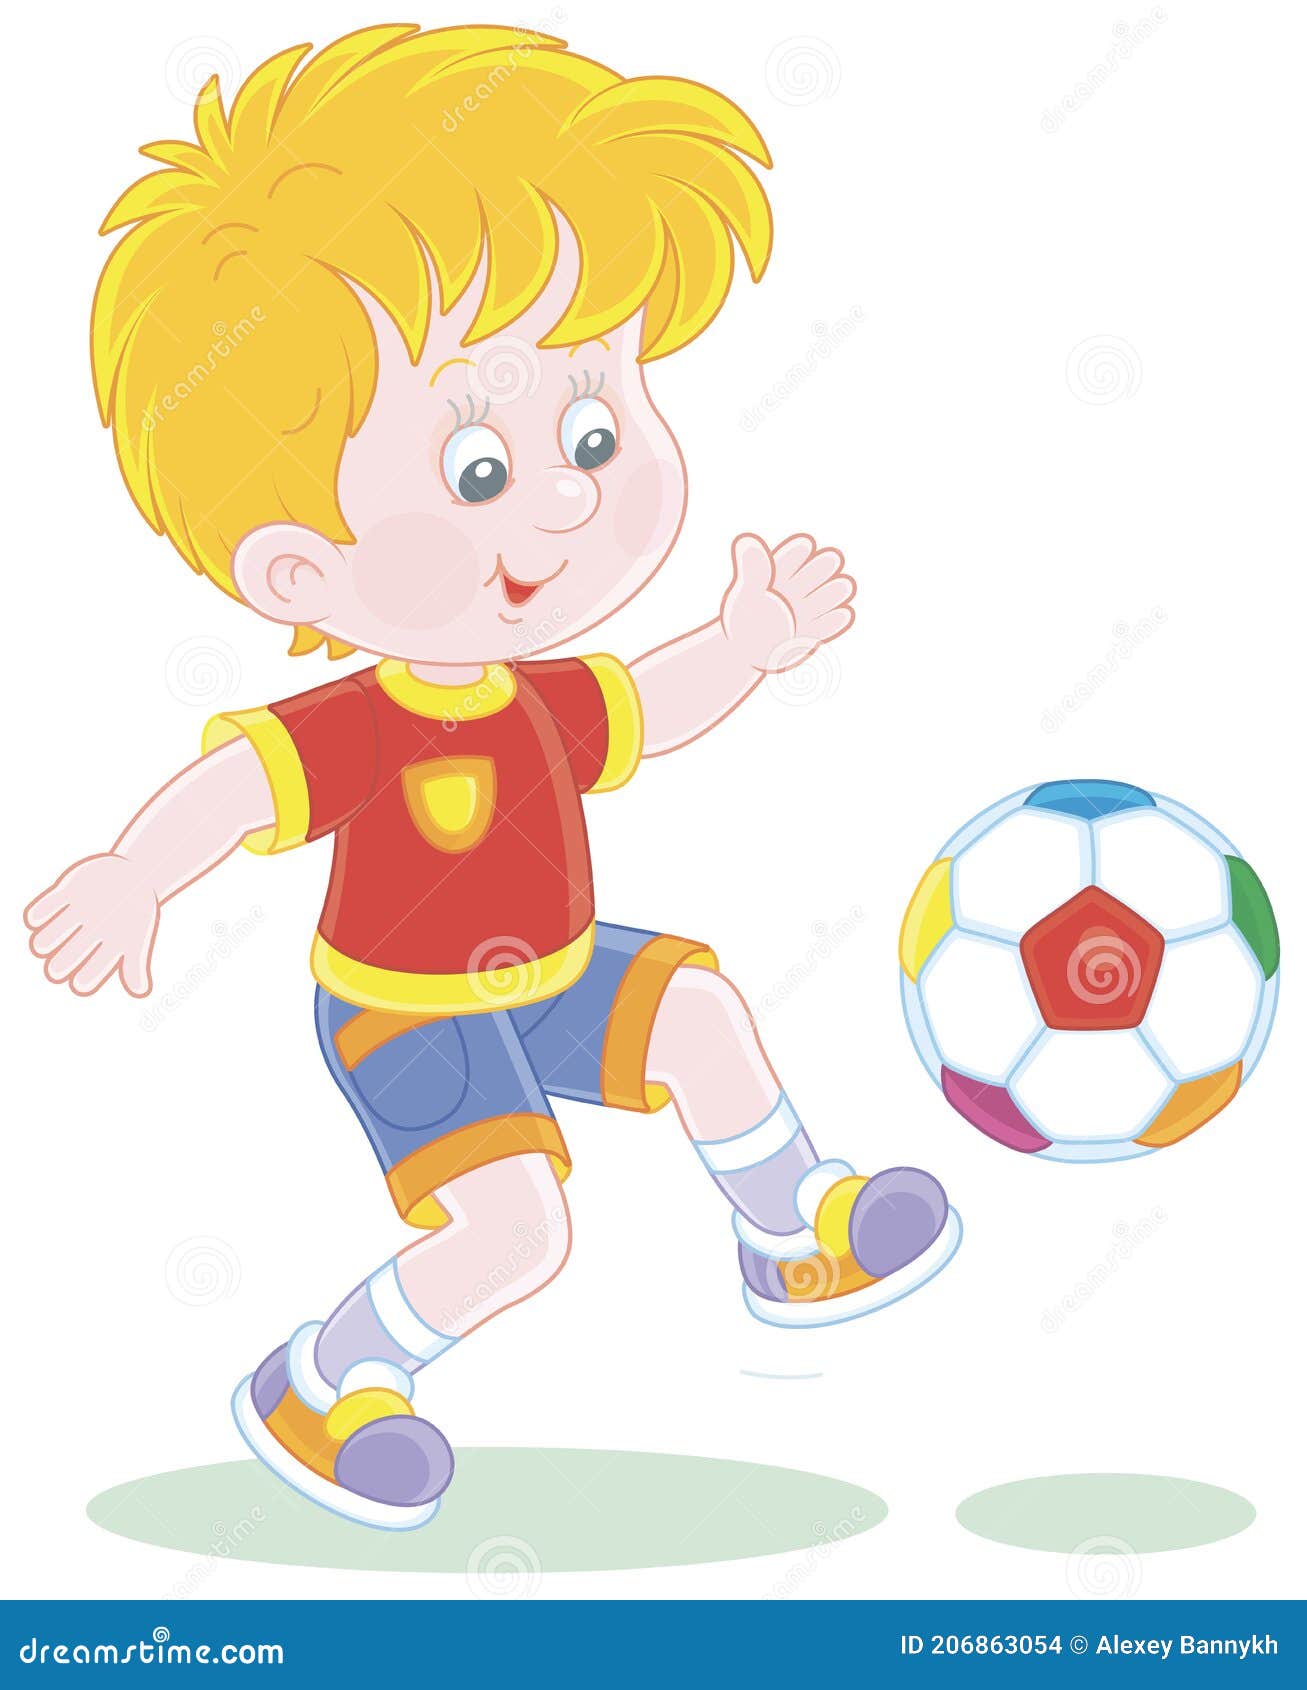 3d rendem homenzinhos engraçados em um estilo minimalista jogadores de  futebol chutam a bola no campo jogo de futebol